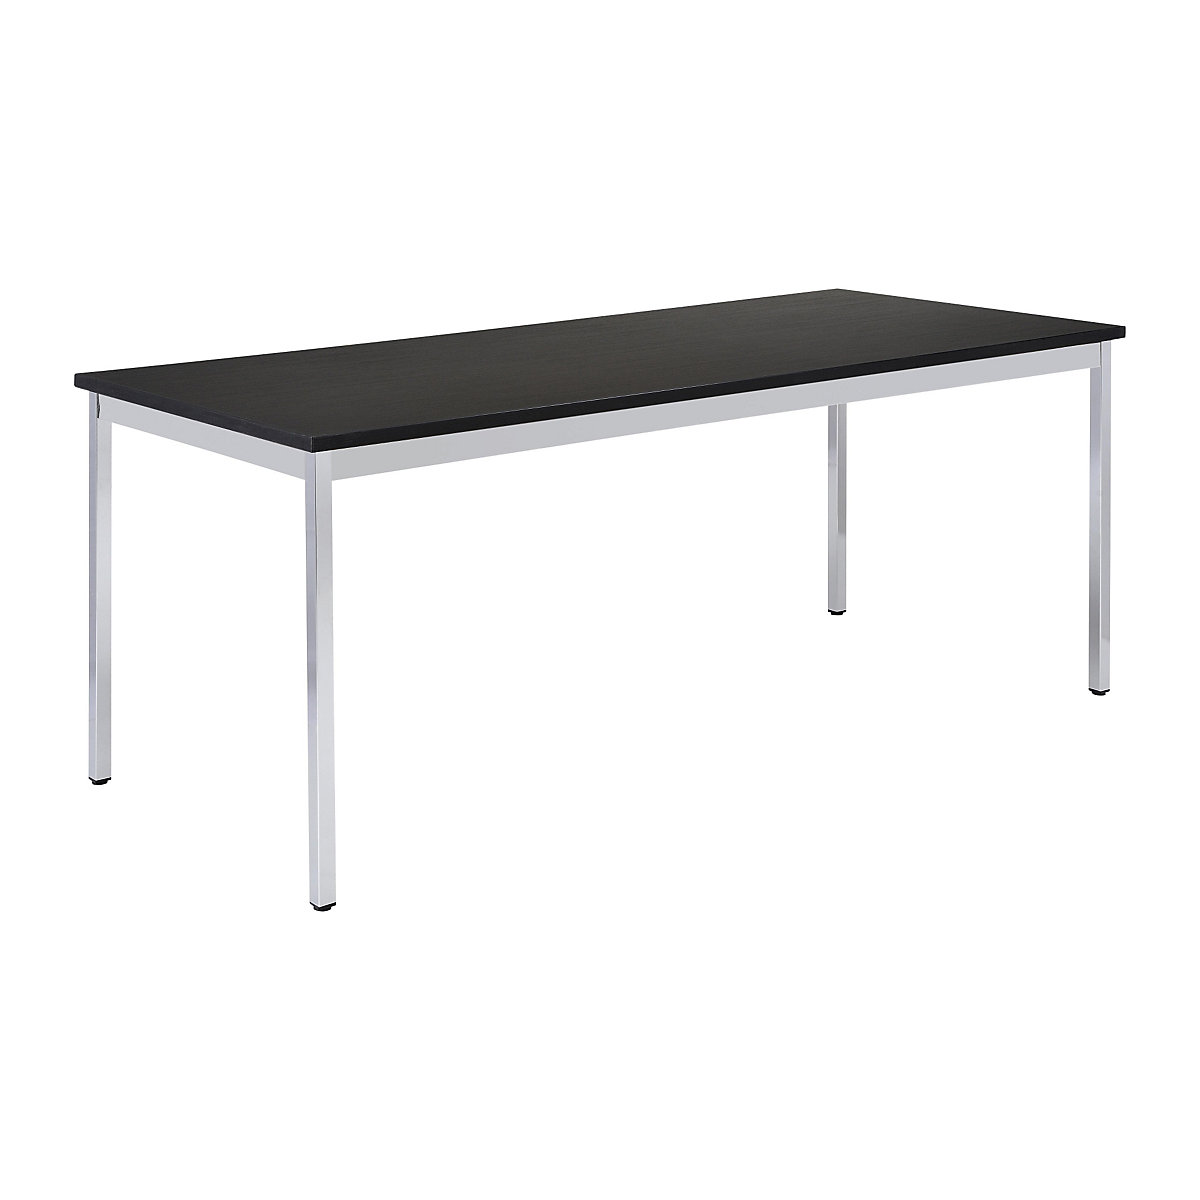 Univerzális asztal – eurokraft basic, négyszög alakú, szé x ma 1200 x 740 mm, mélység 800 mm, fekete lap, krómozott váz-13